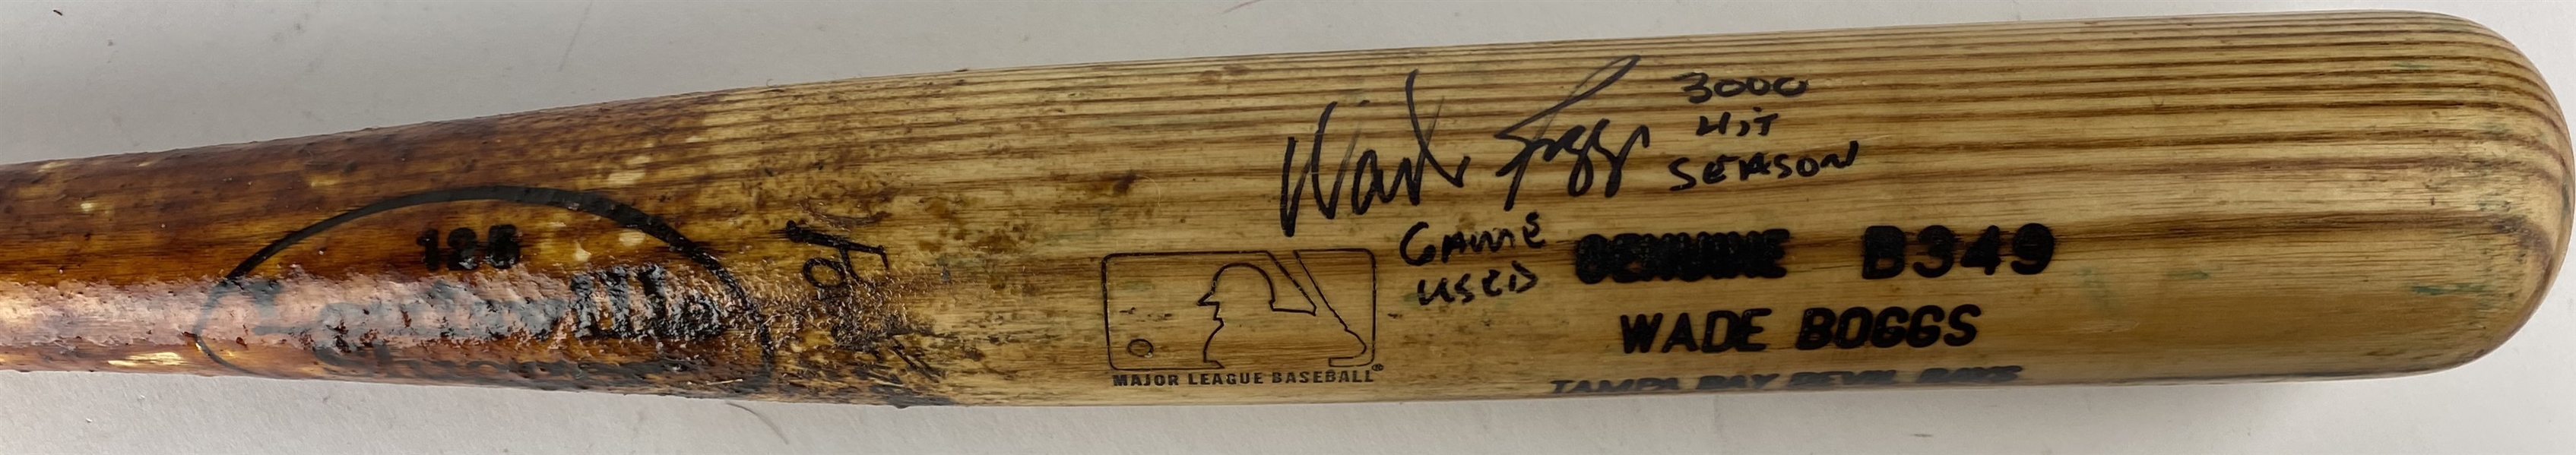 Wade Boggs Signed & Game Used 1999 B349 Baseball Bat During 3000 Hit Season! PSA/DNA GU 9!